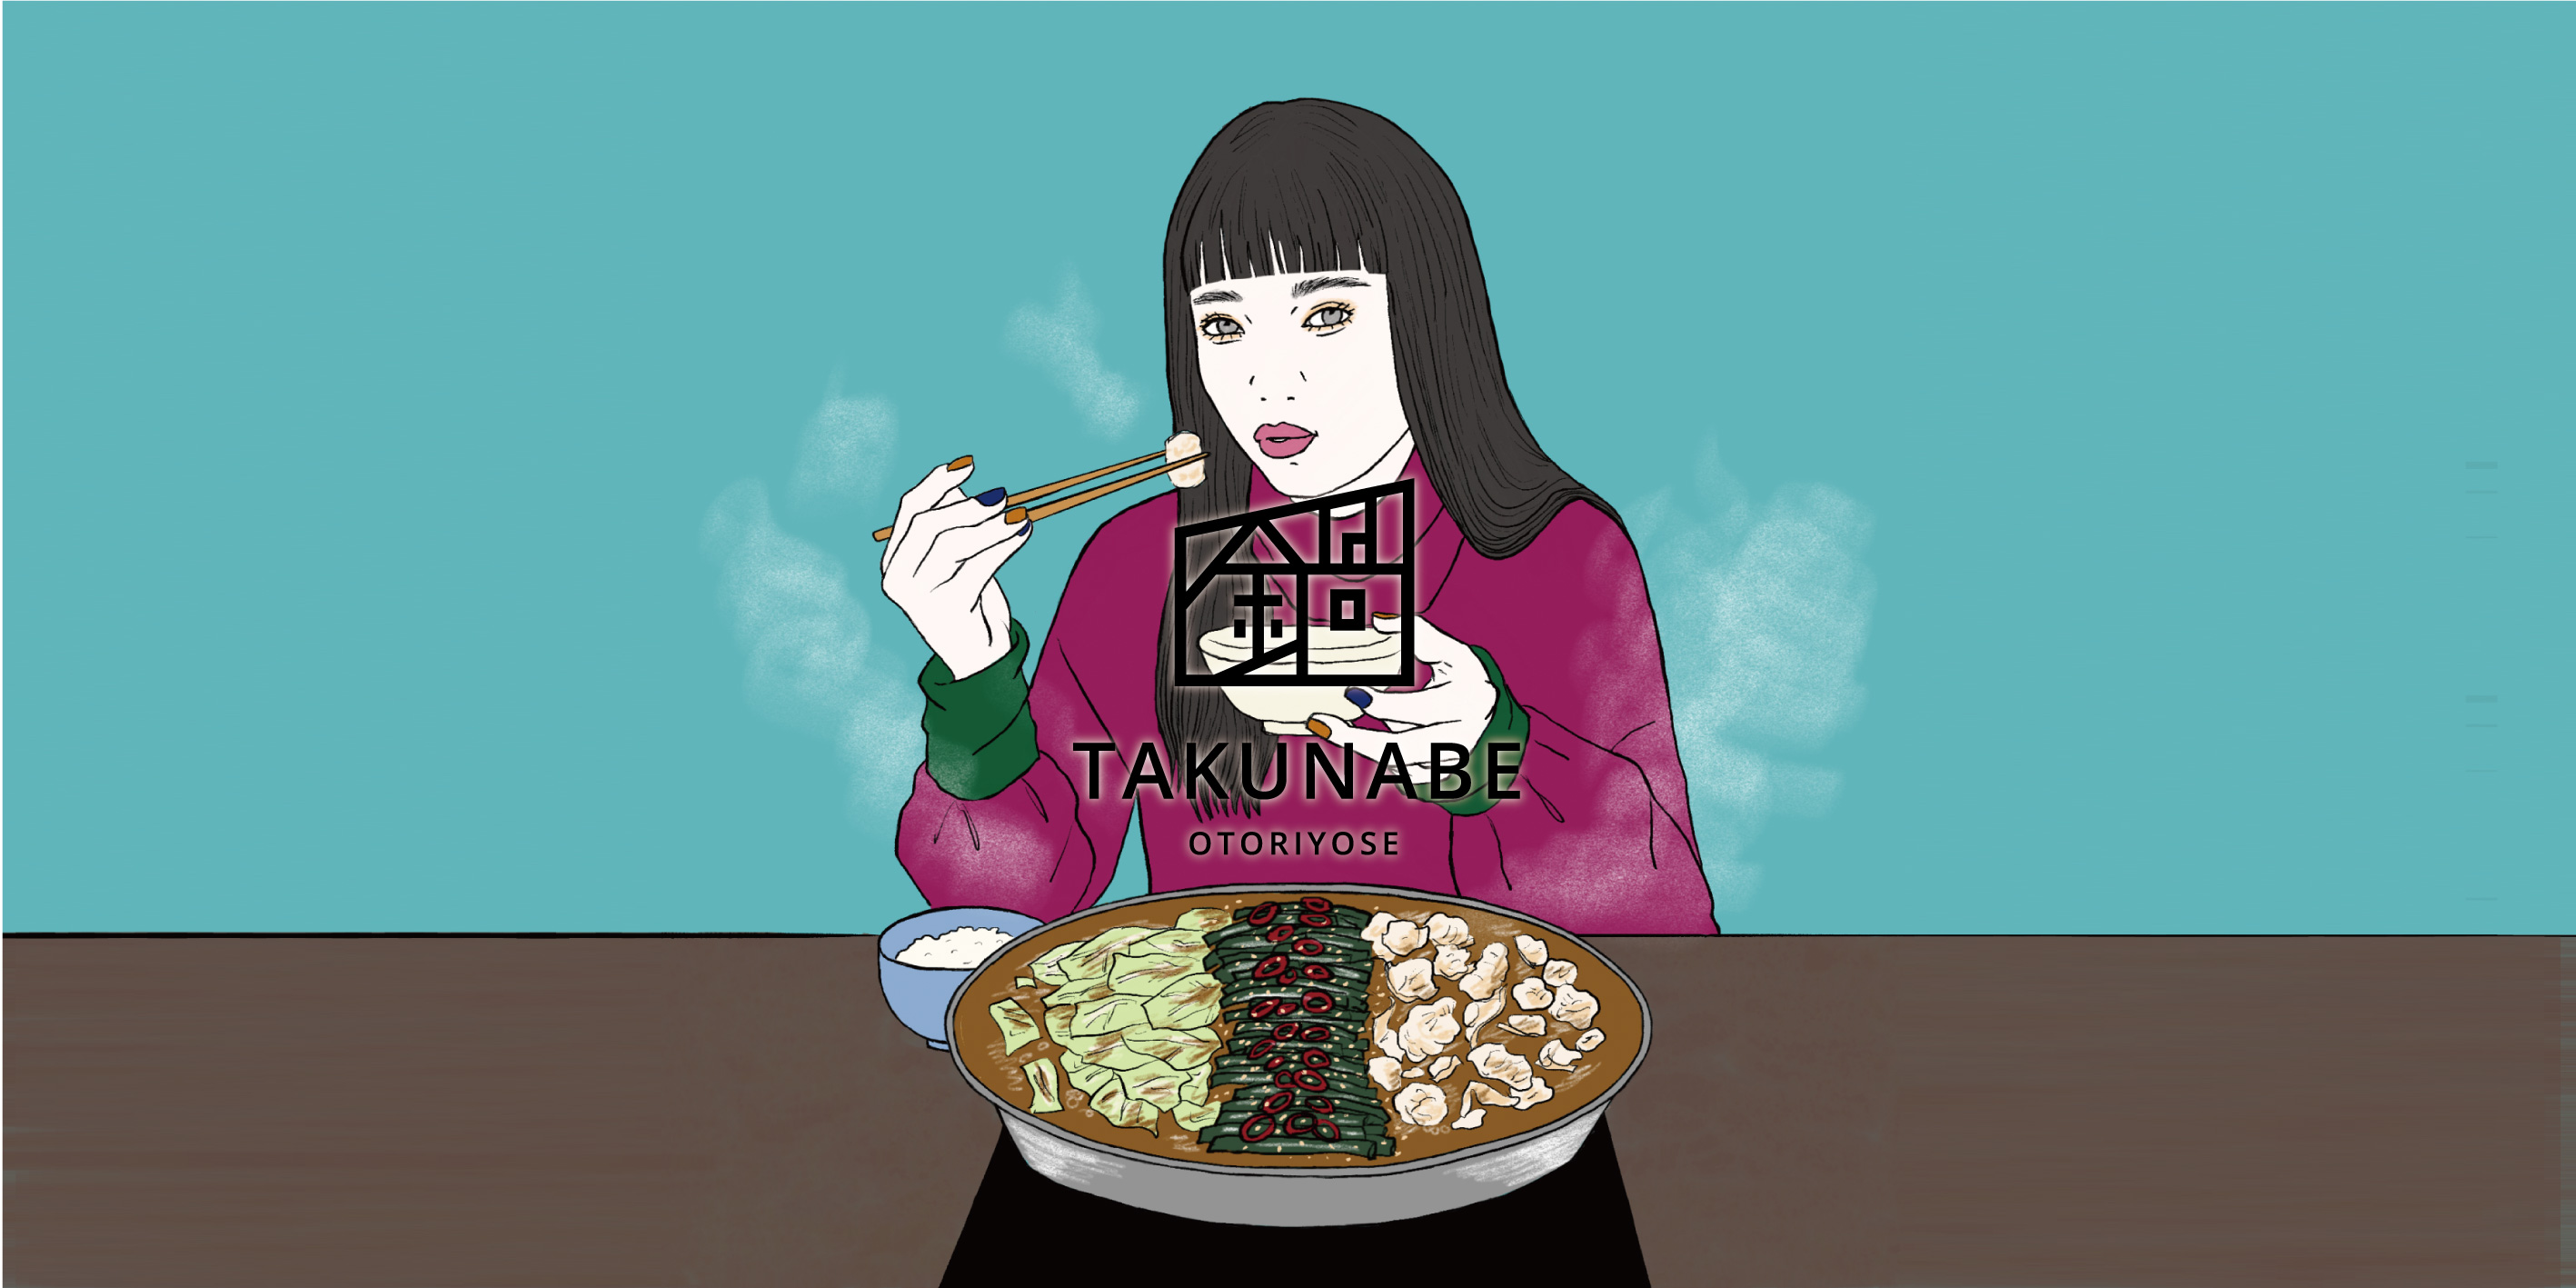 【プレスリリース】鍋料理の通販ブランドを刷新、本格鍋をおうちで楽しむお取り寄せ専門店「TAKUNABE」としてリニューアルオープン